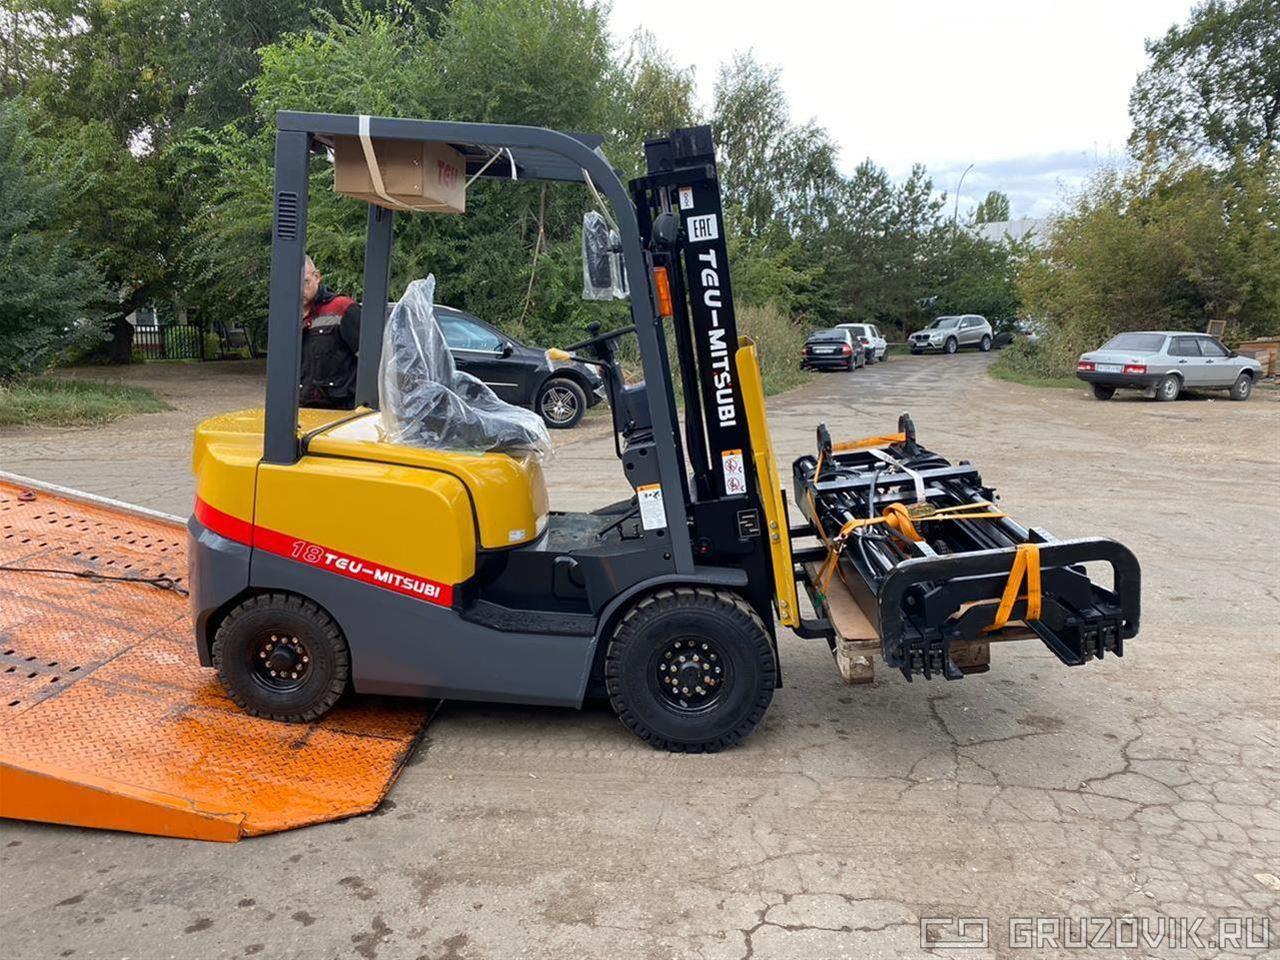 Новый Вилочный погрузчик TEU Forklift FD18T в продаже  на Gruzovik.ru, 1 450 000 ₽